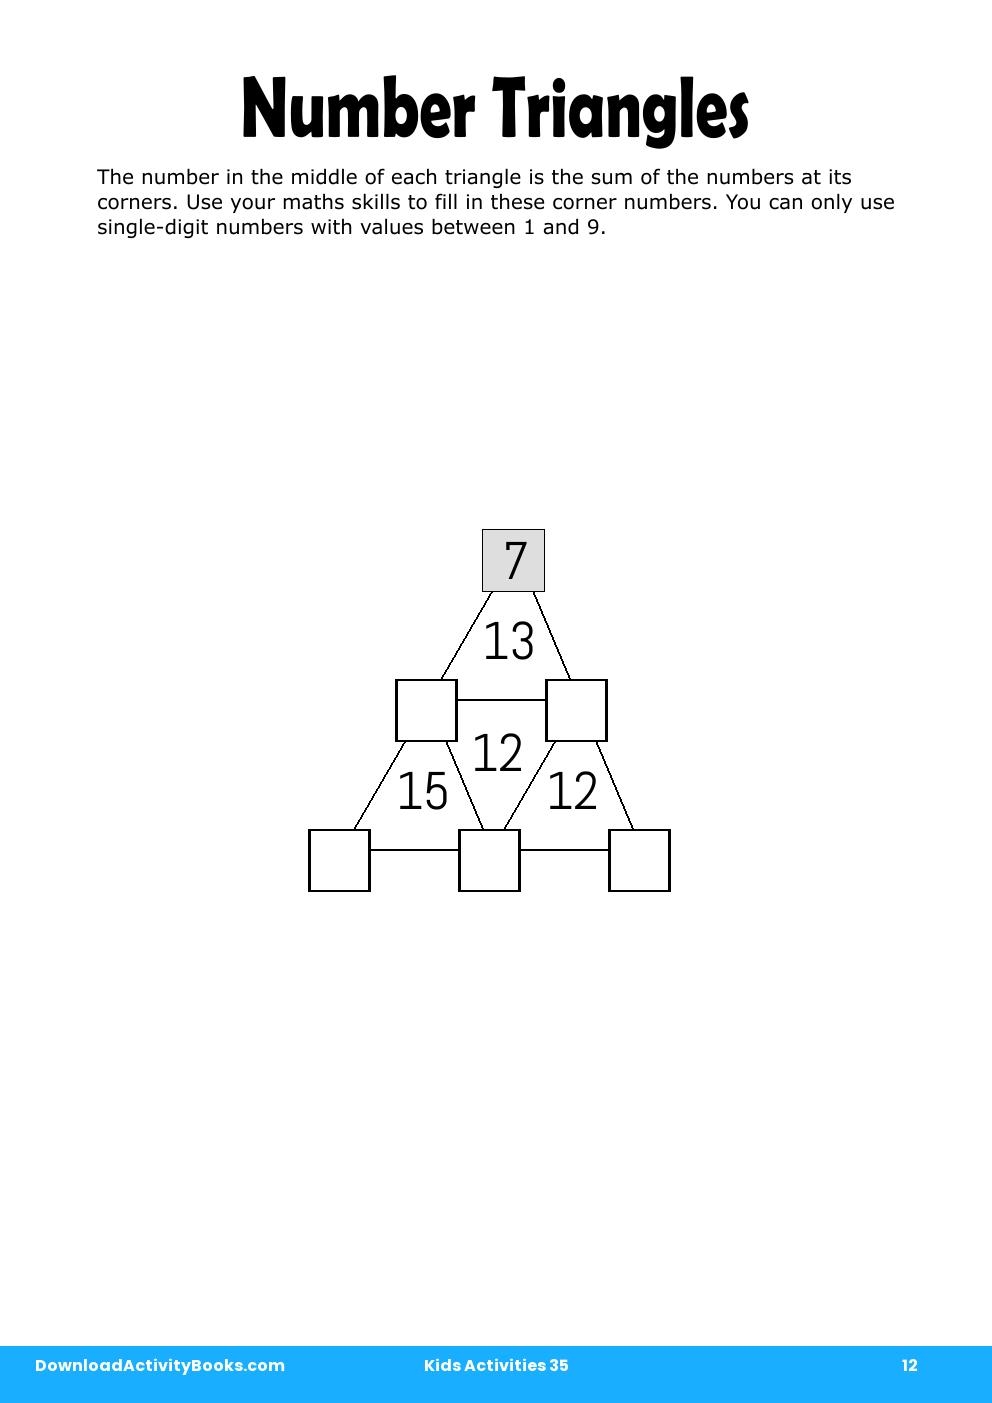 Number Triangles in Kids Activities 35